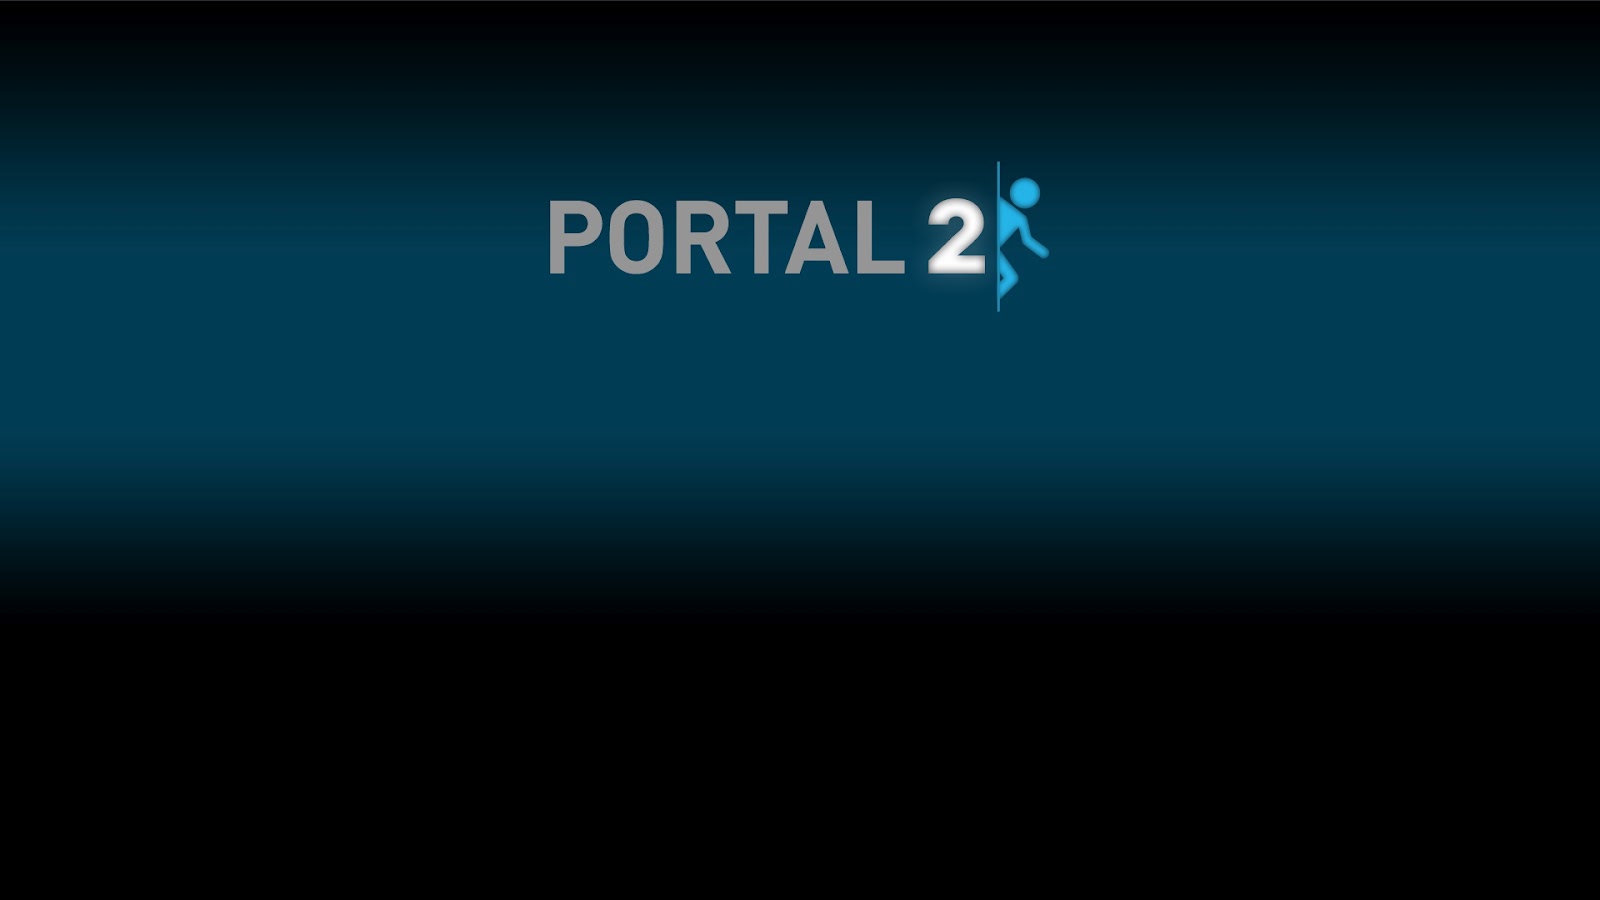 portal 2 wide Portal 2 in Full HD Wallpapers 1080p 1600x900